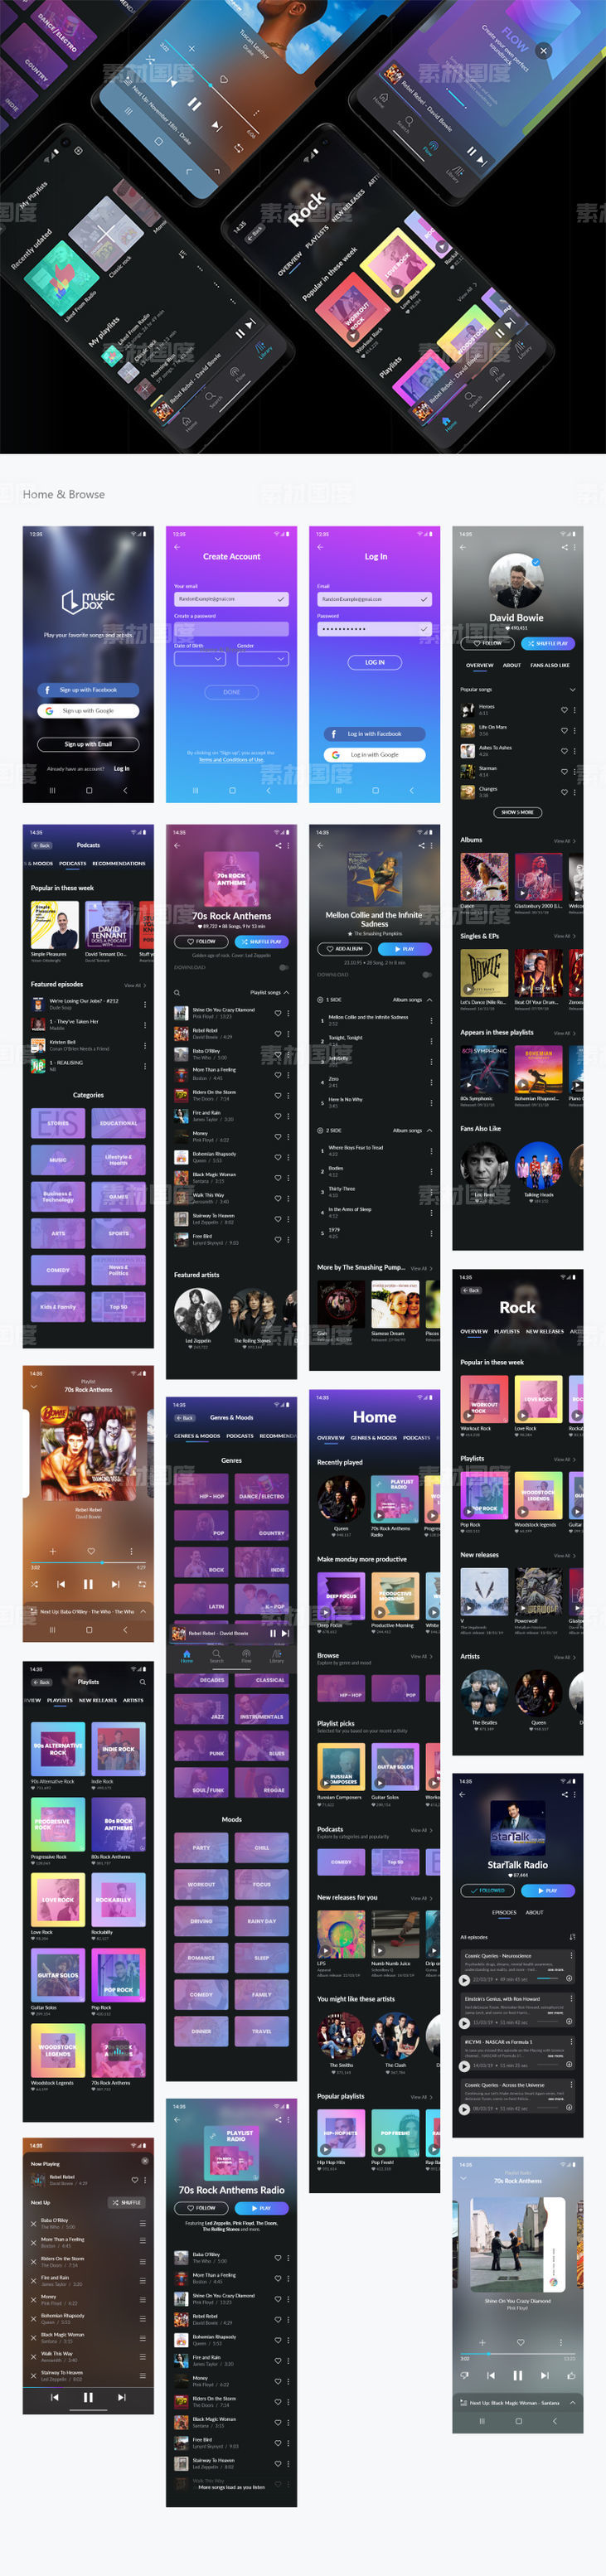 成套音乐app ui musicbox .xd素材下载